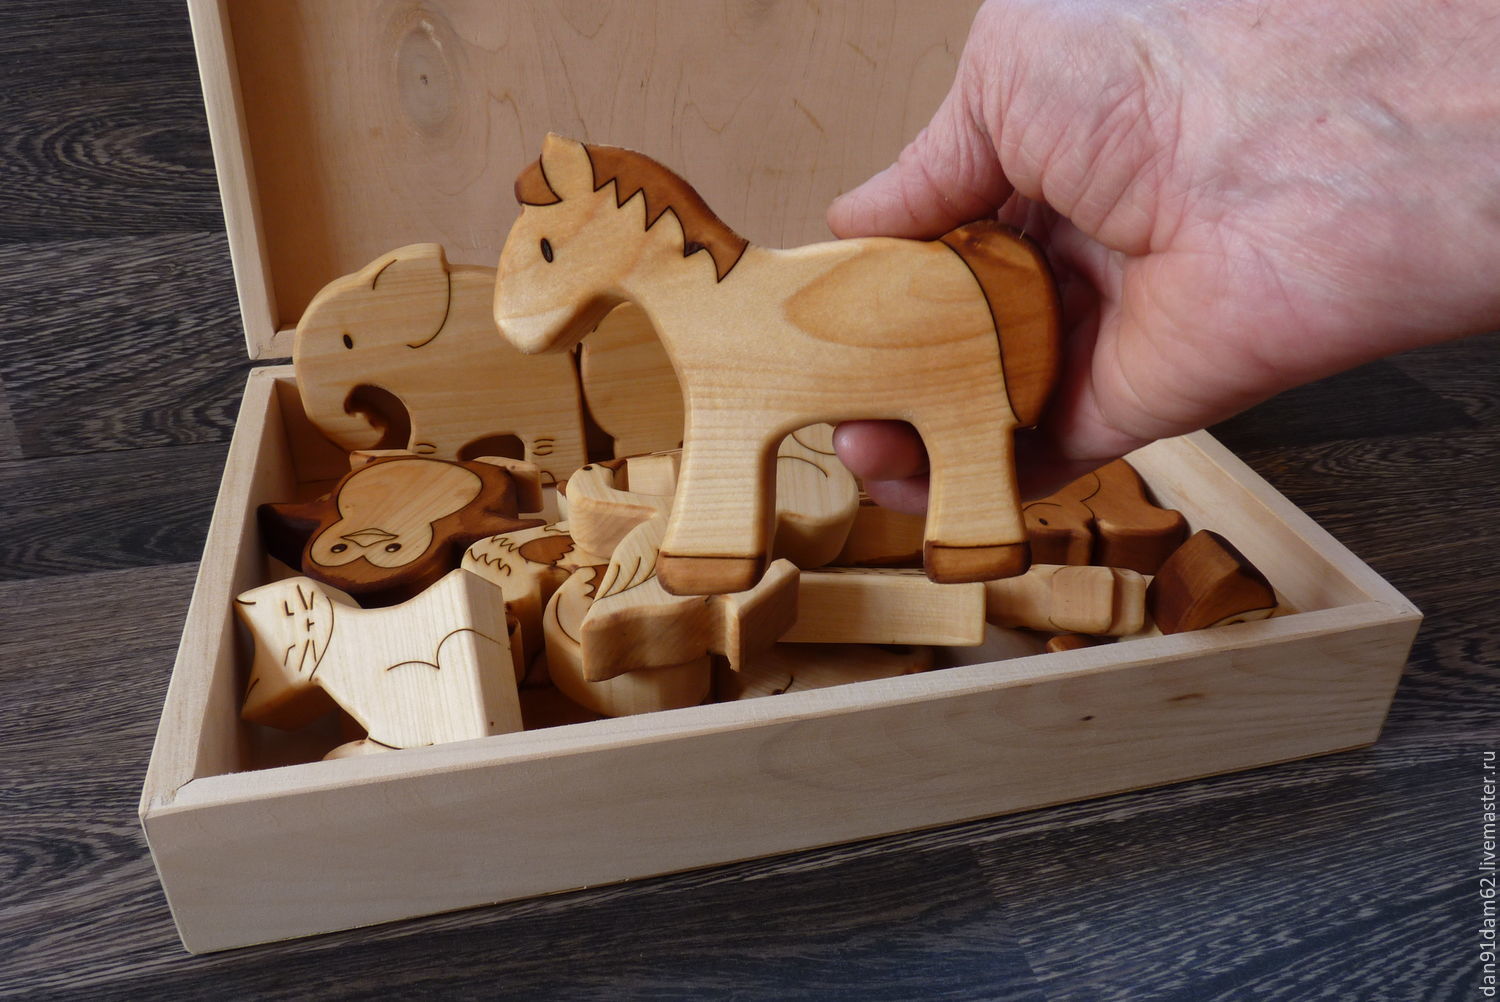 Wooden master. Деревянные игрушки. Деревянные игрушки для детей. Поделки из дерева. Красивые деревянные игрушки.